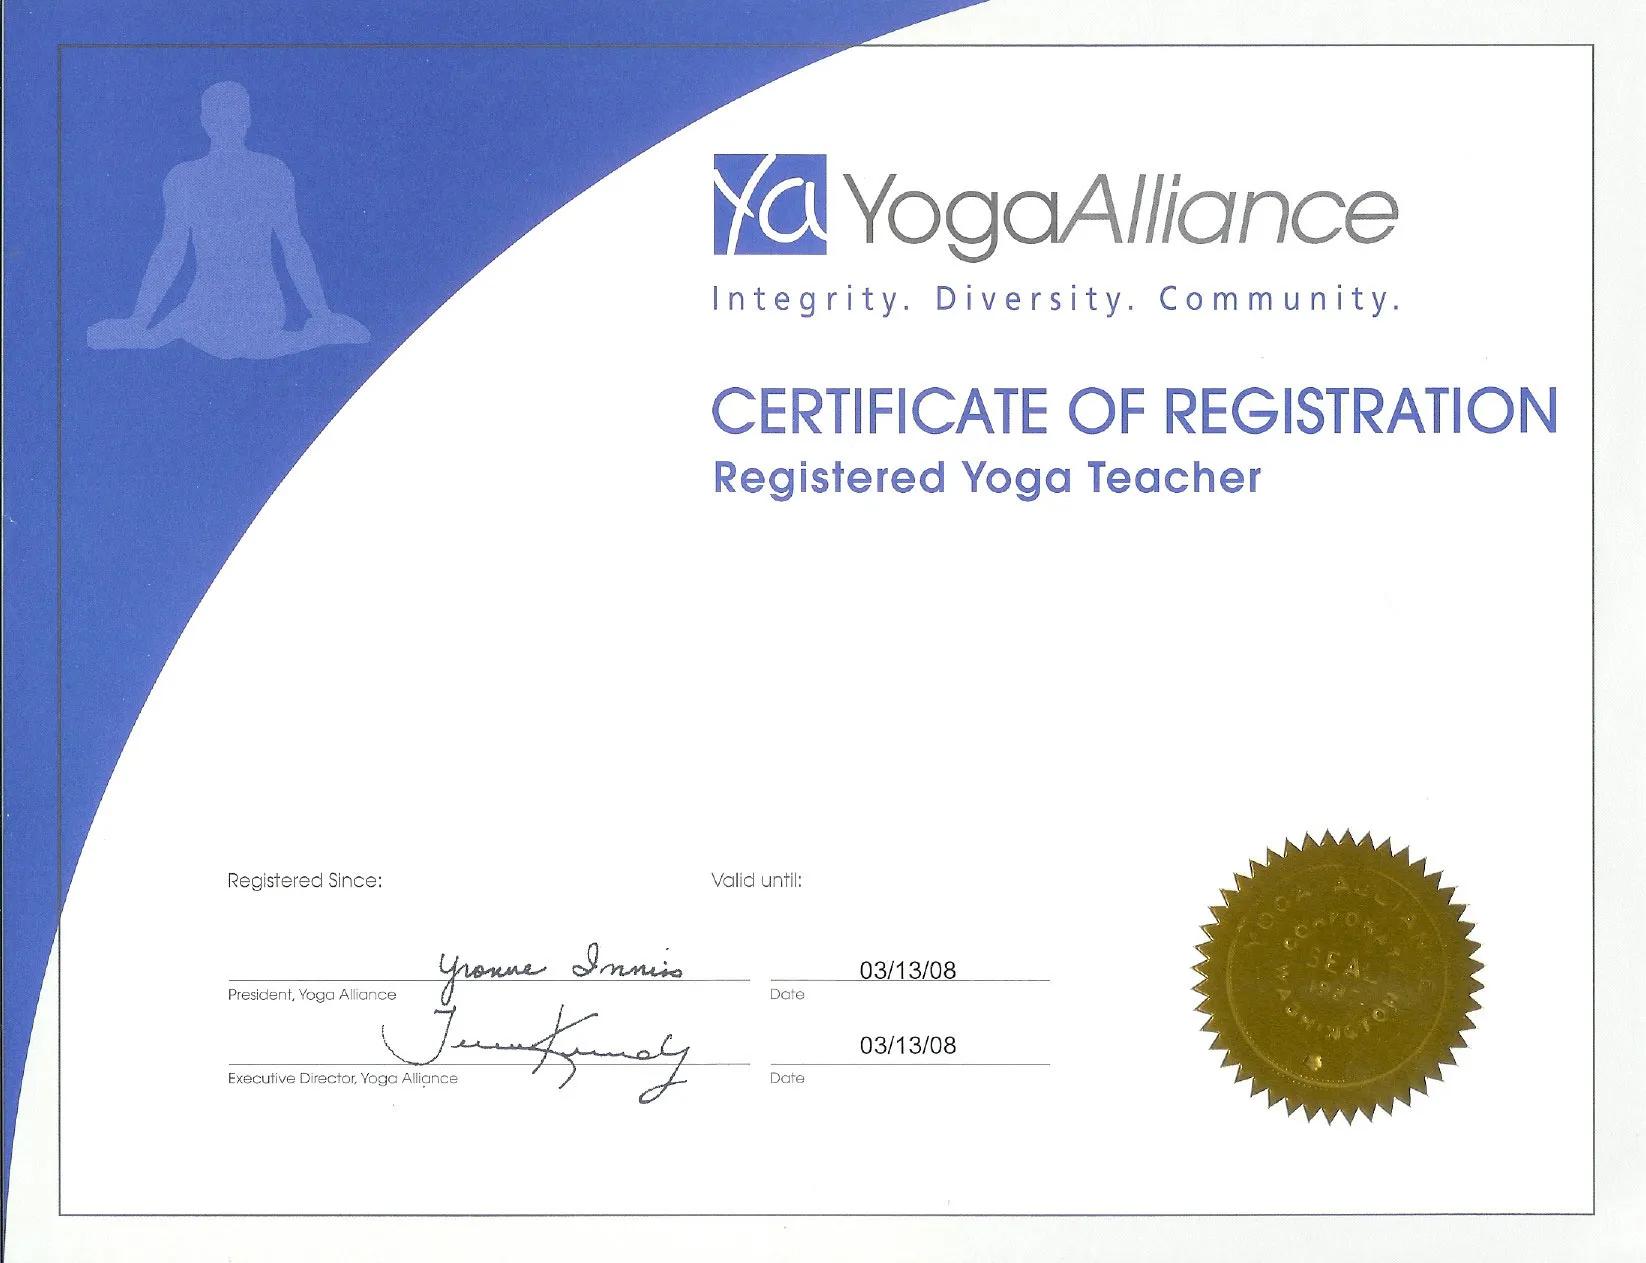 international yoga certification - How do I get an international yoga certificate